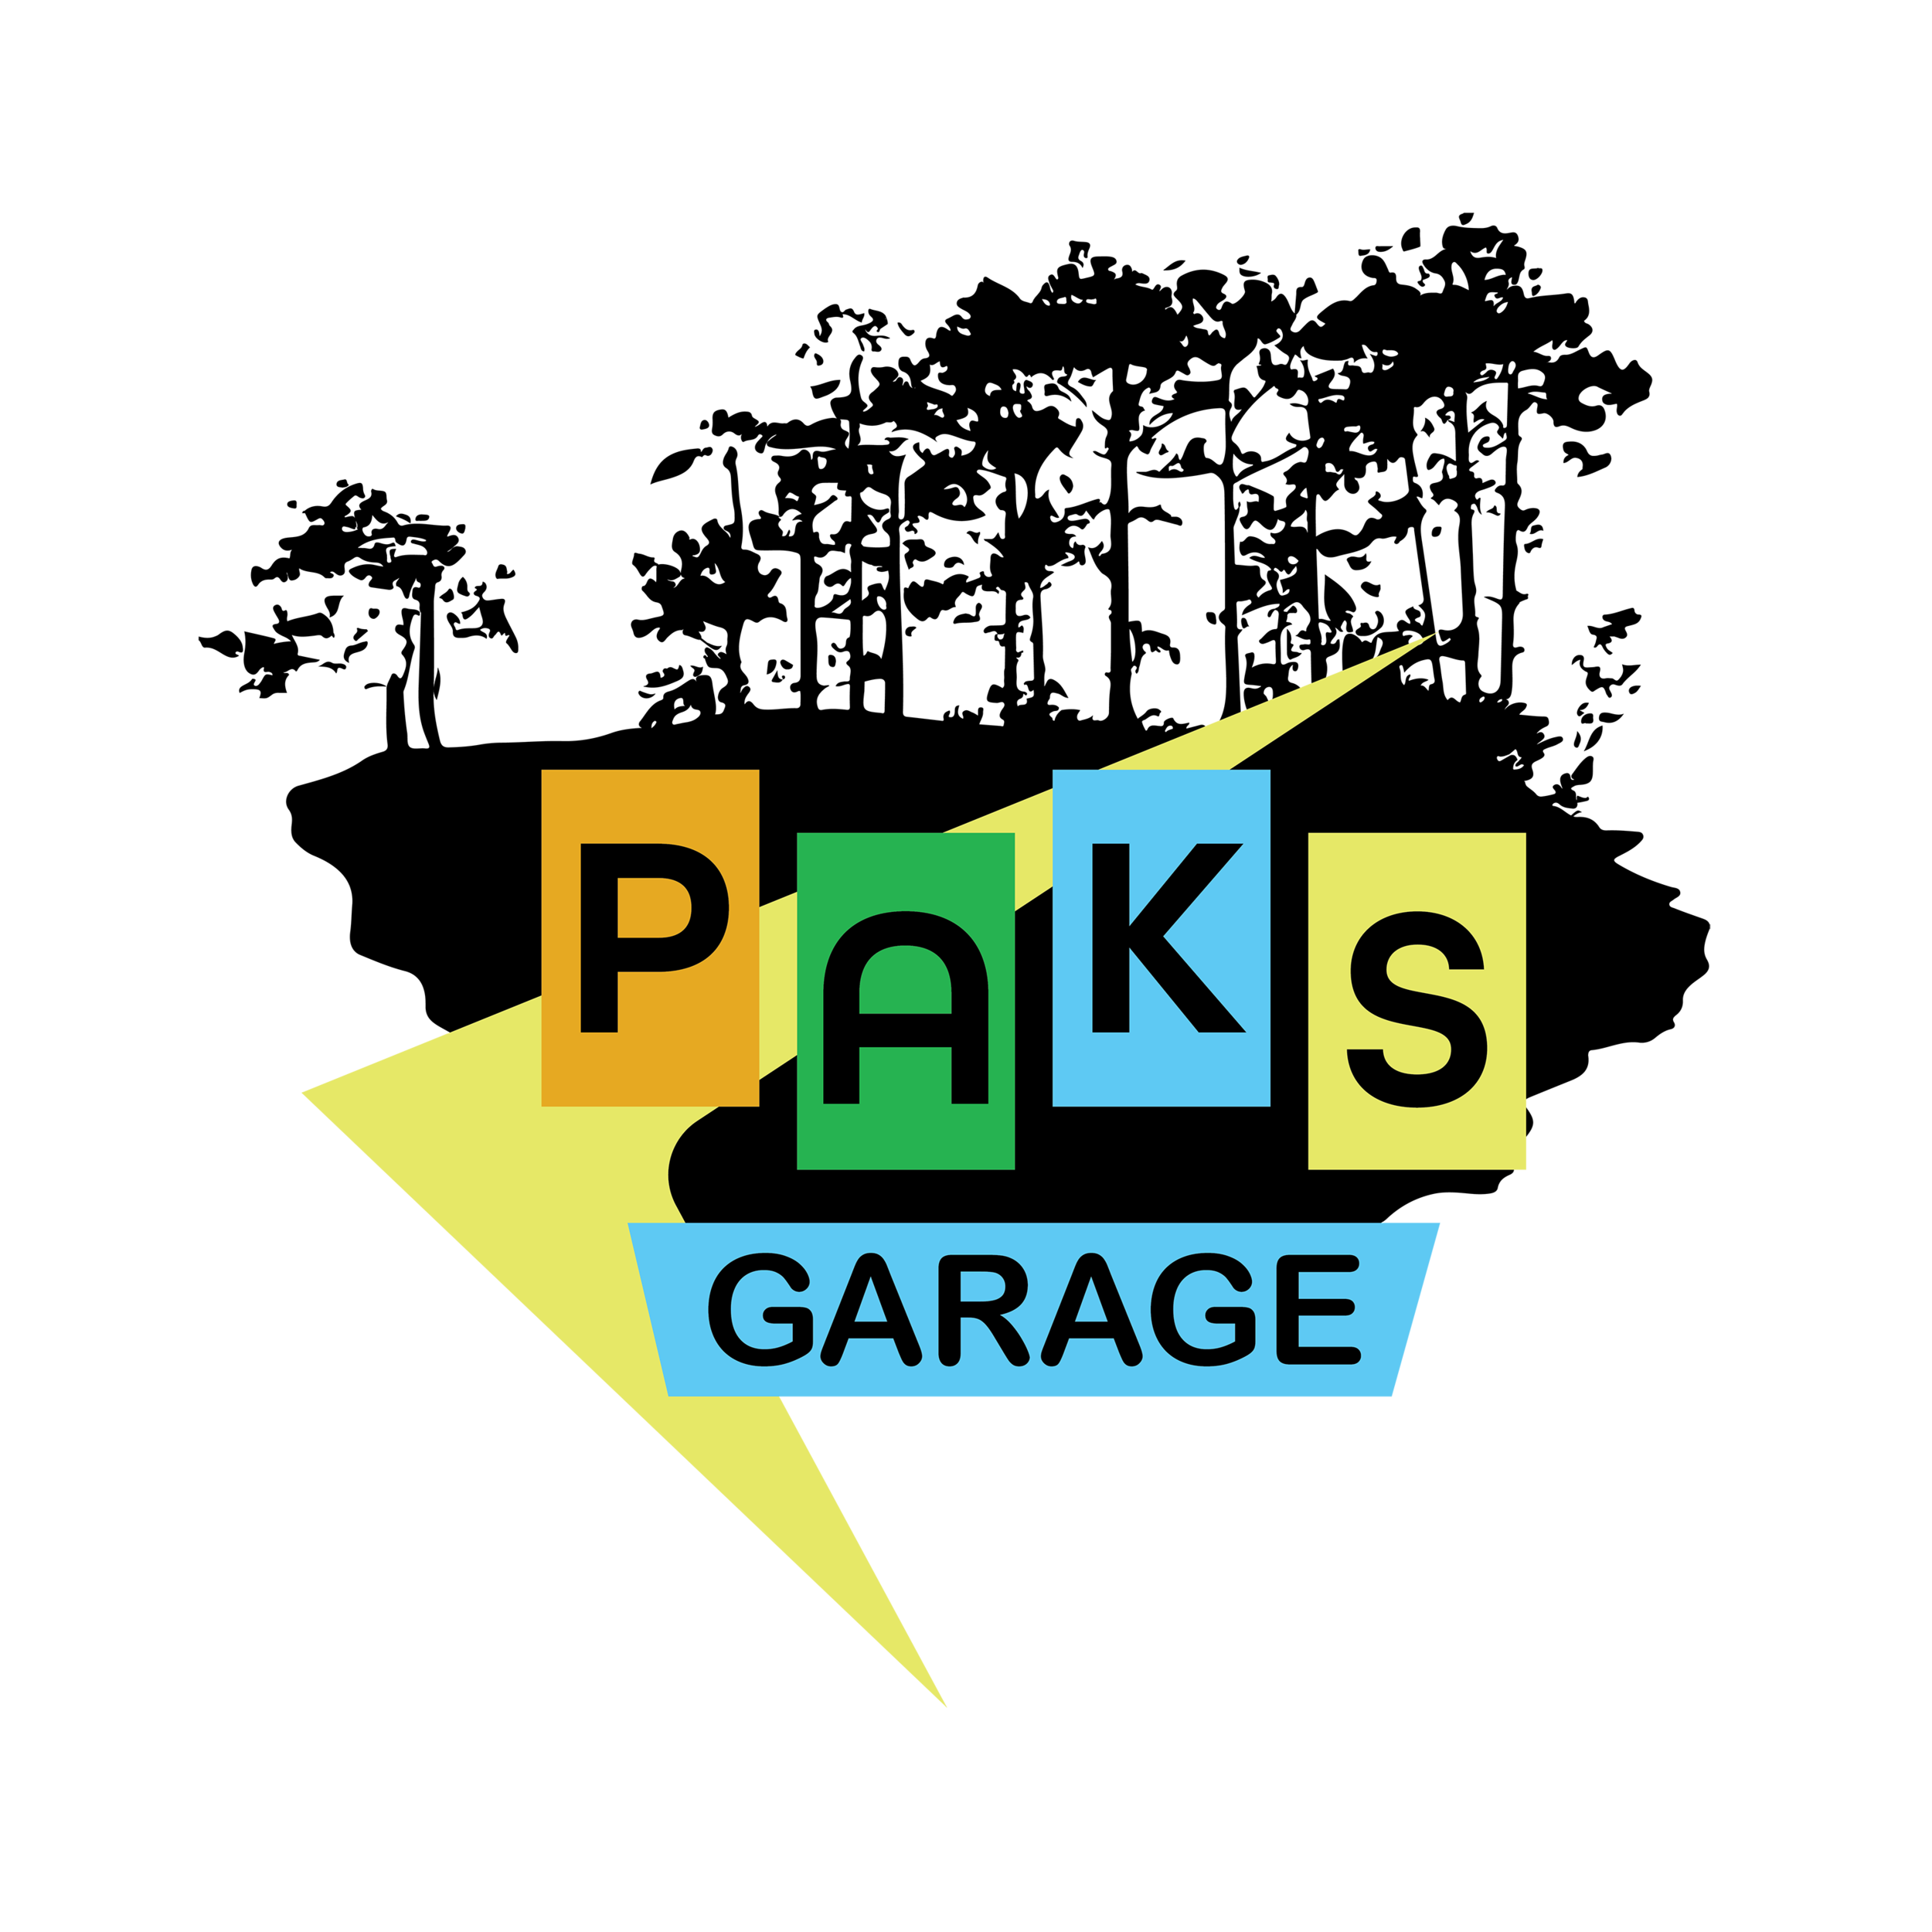 Pak's Garage